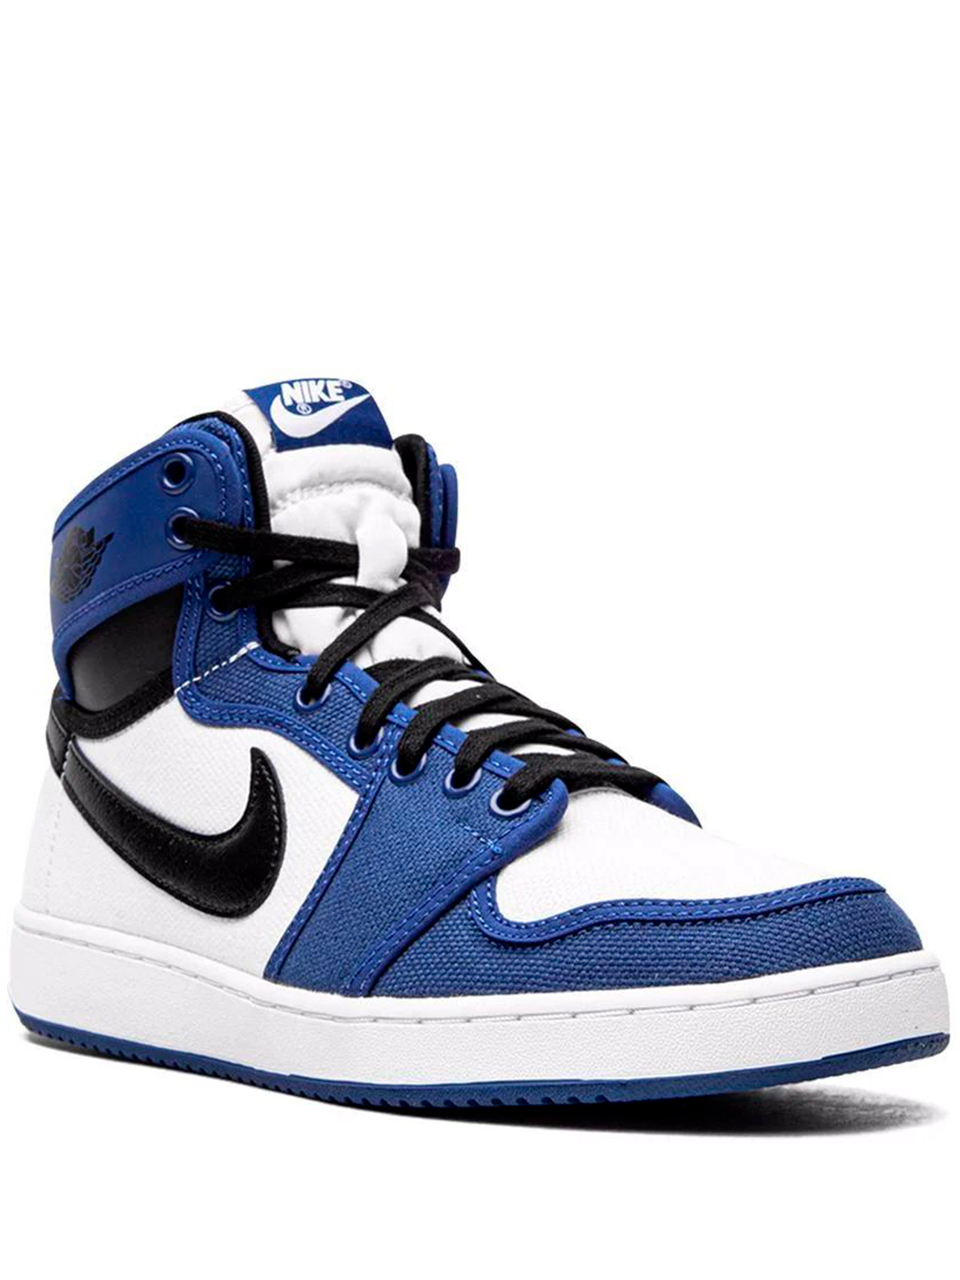 Imagem de: Tênis Nike Air Jordan 1 KO Storm Blue Azul